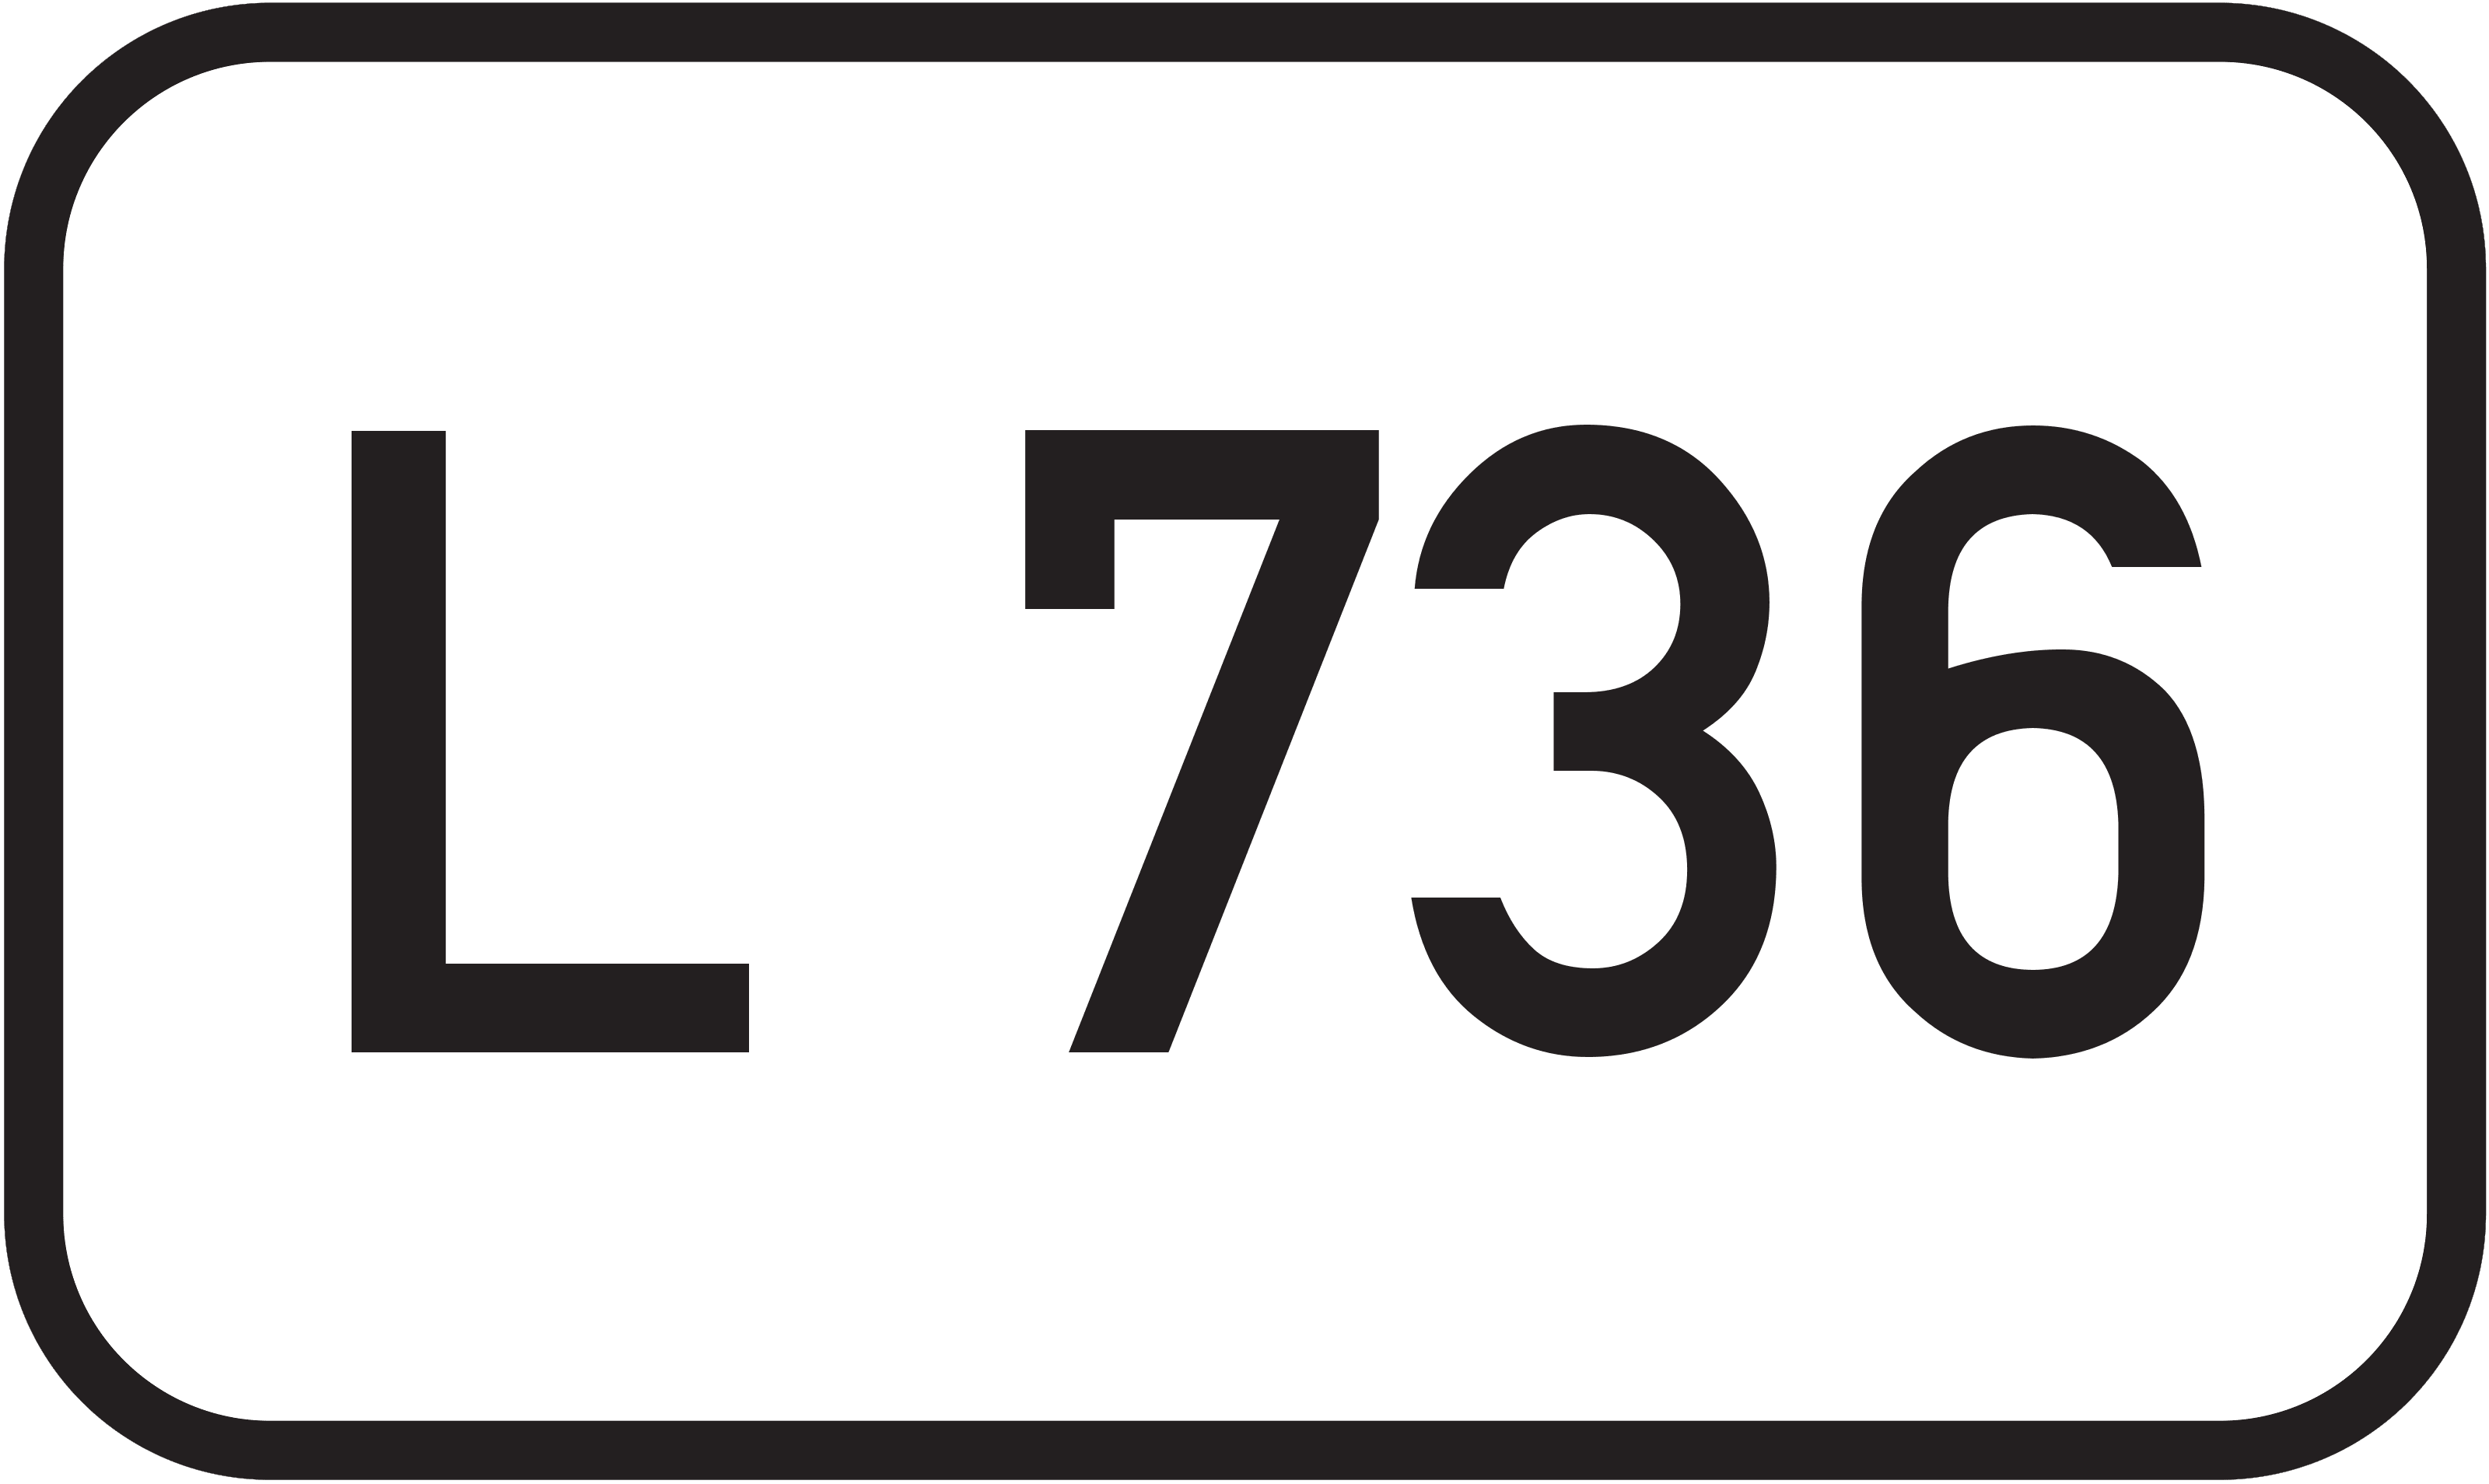 Landesstraße L 736